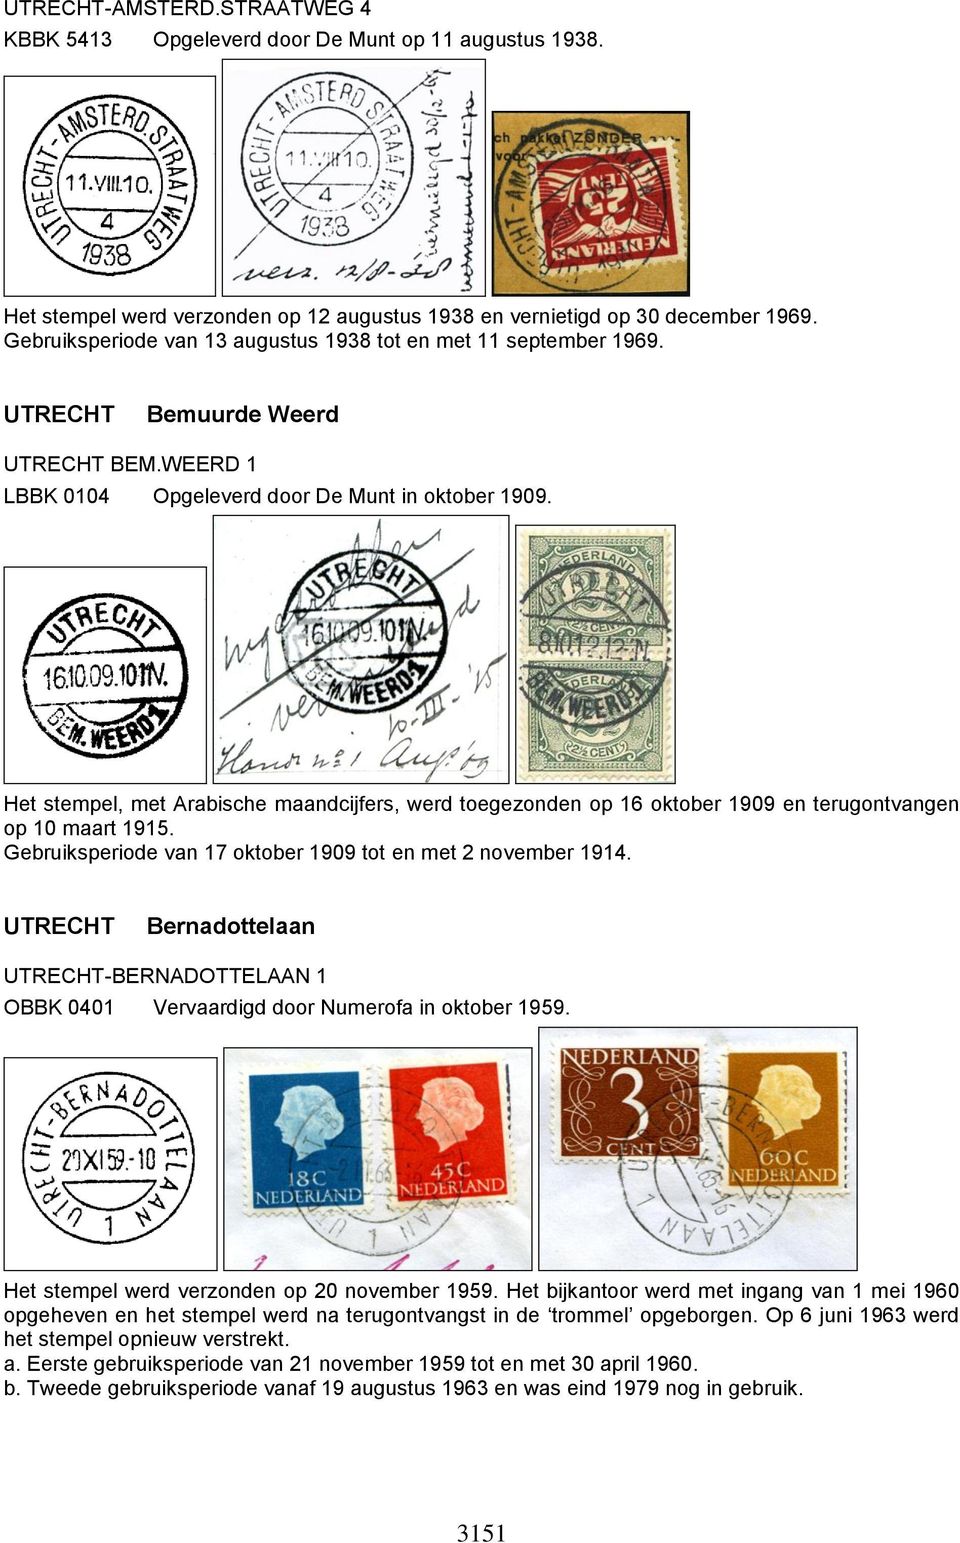 Het stempel, met Arabische maandcijfers, werd toegezonden op 16 oktober 1909 en terugontvangen op 10 maart 1915. Gebruiksperiode van 17 oktober 1909 tot en met 2 november 1914.